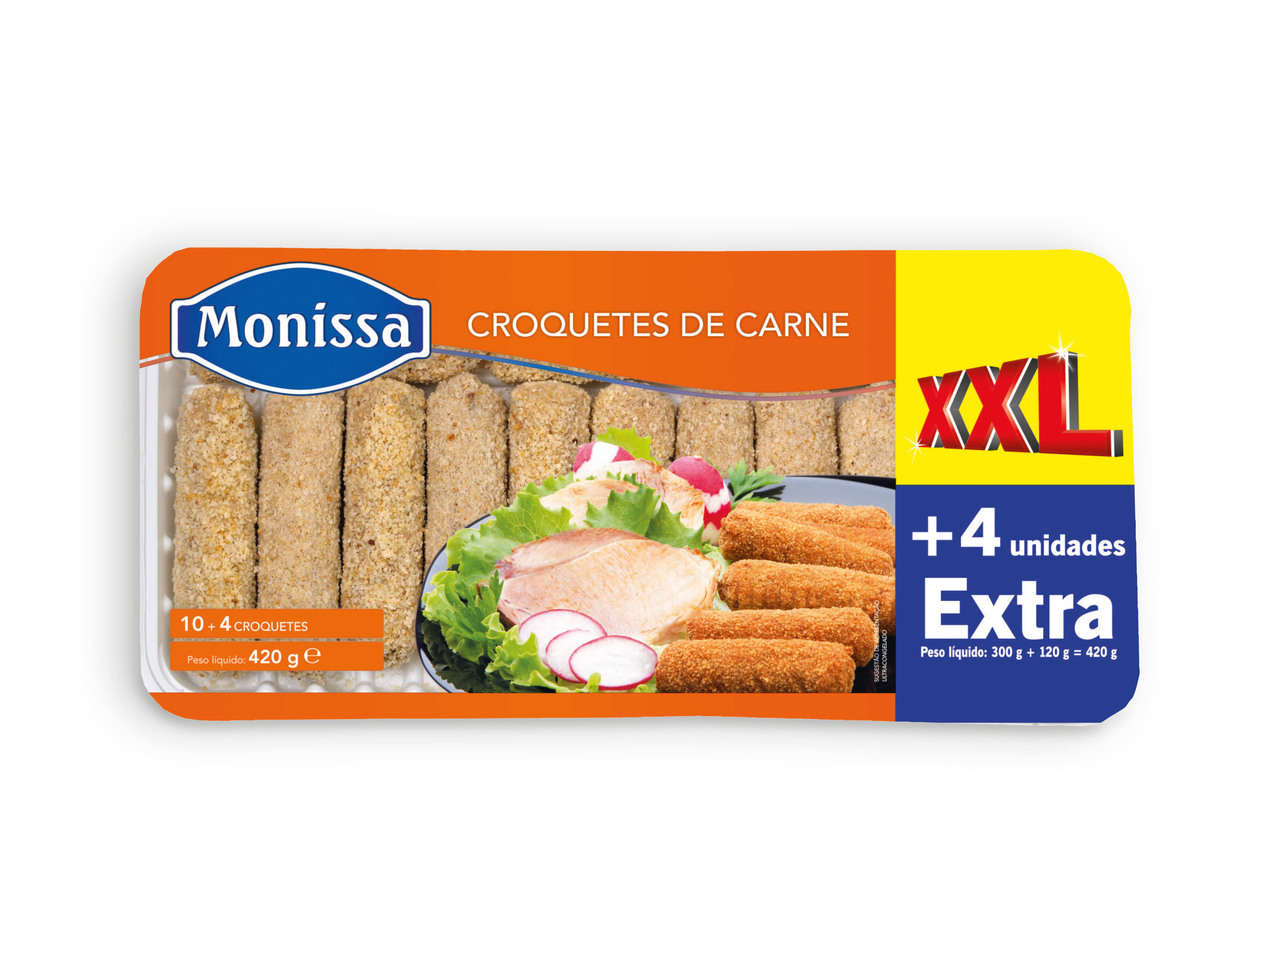 MONISSA(R) Croquetes de Carne XXL